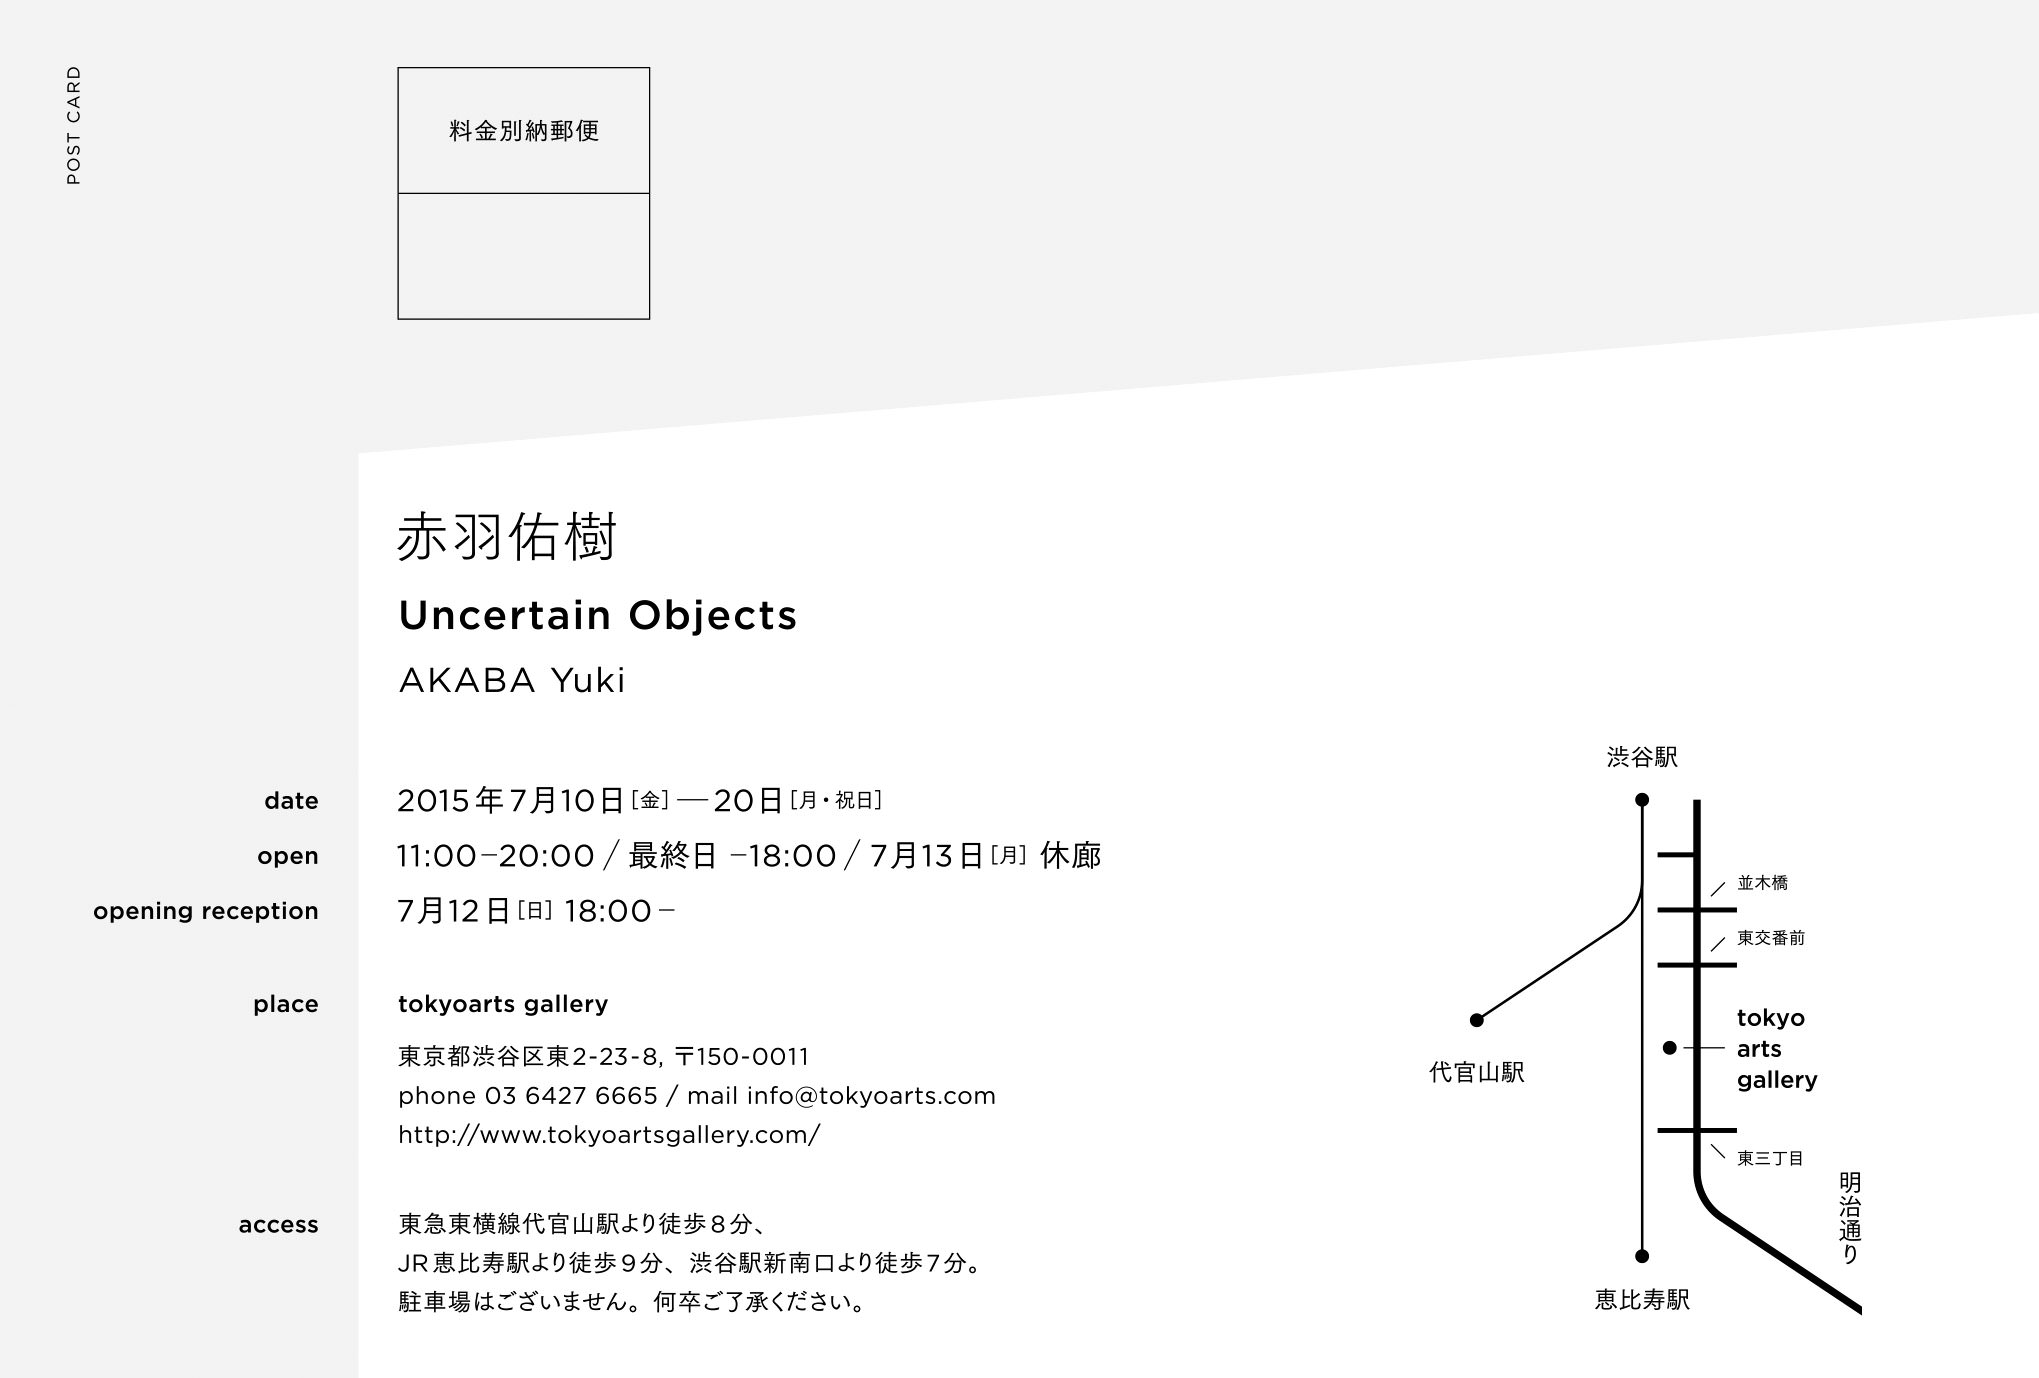 赤羽佑樹「Uncertain Objects」 Akaba Yuki “Uncertain Objects” - tokyoarts gallery